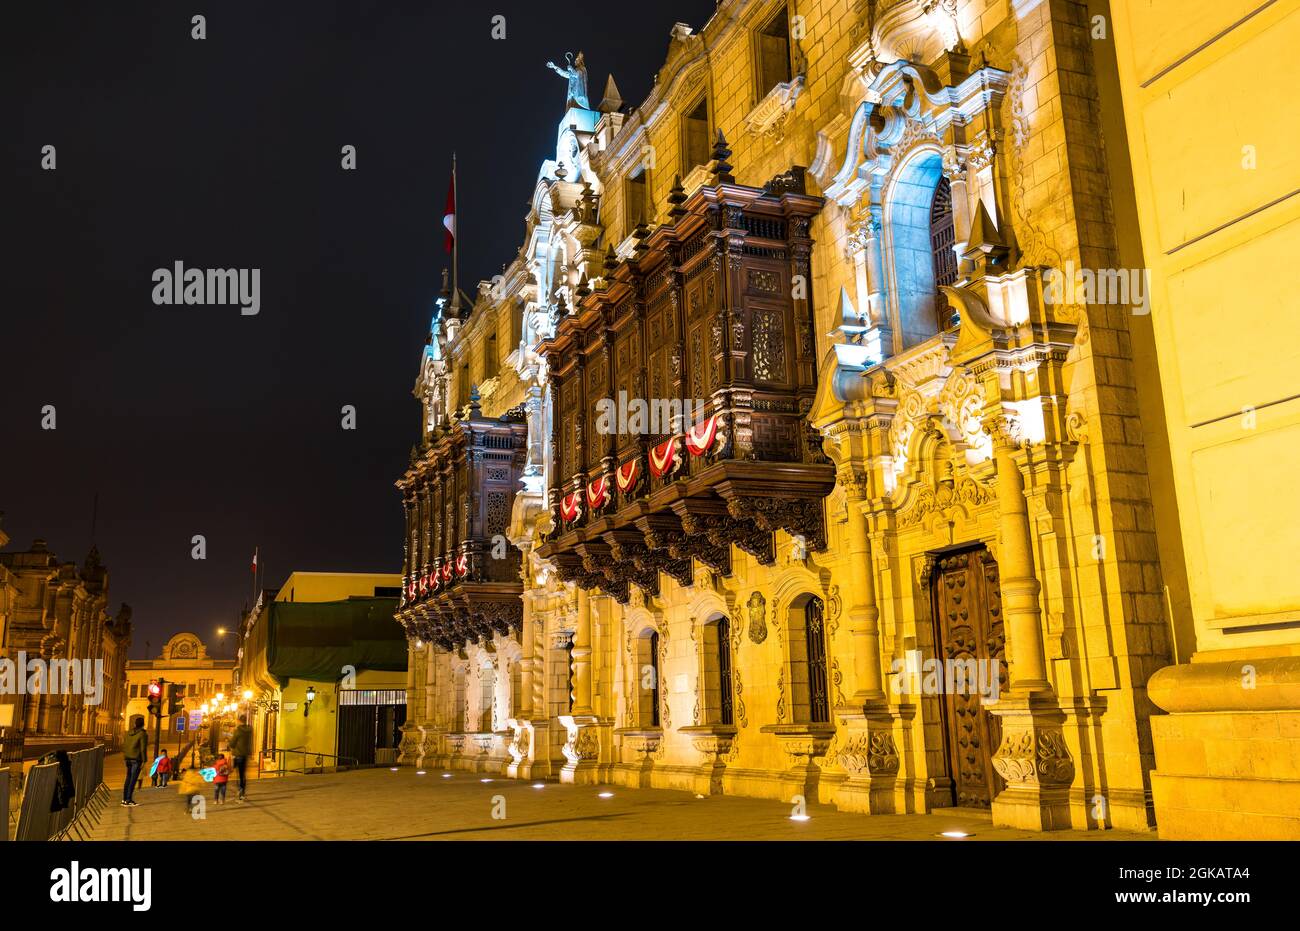 Archbishop Palace of Lima in Peru Stock Photo